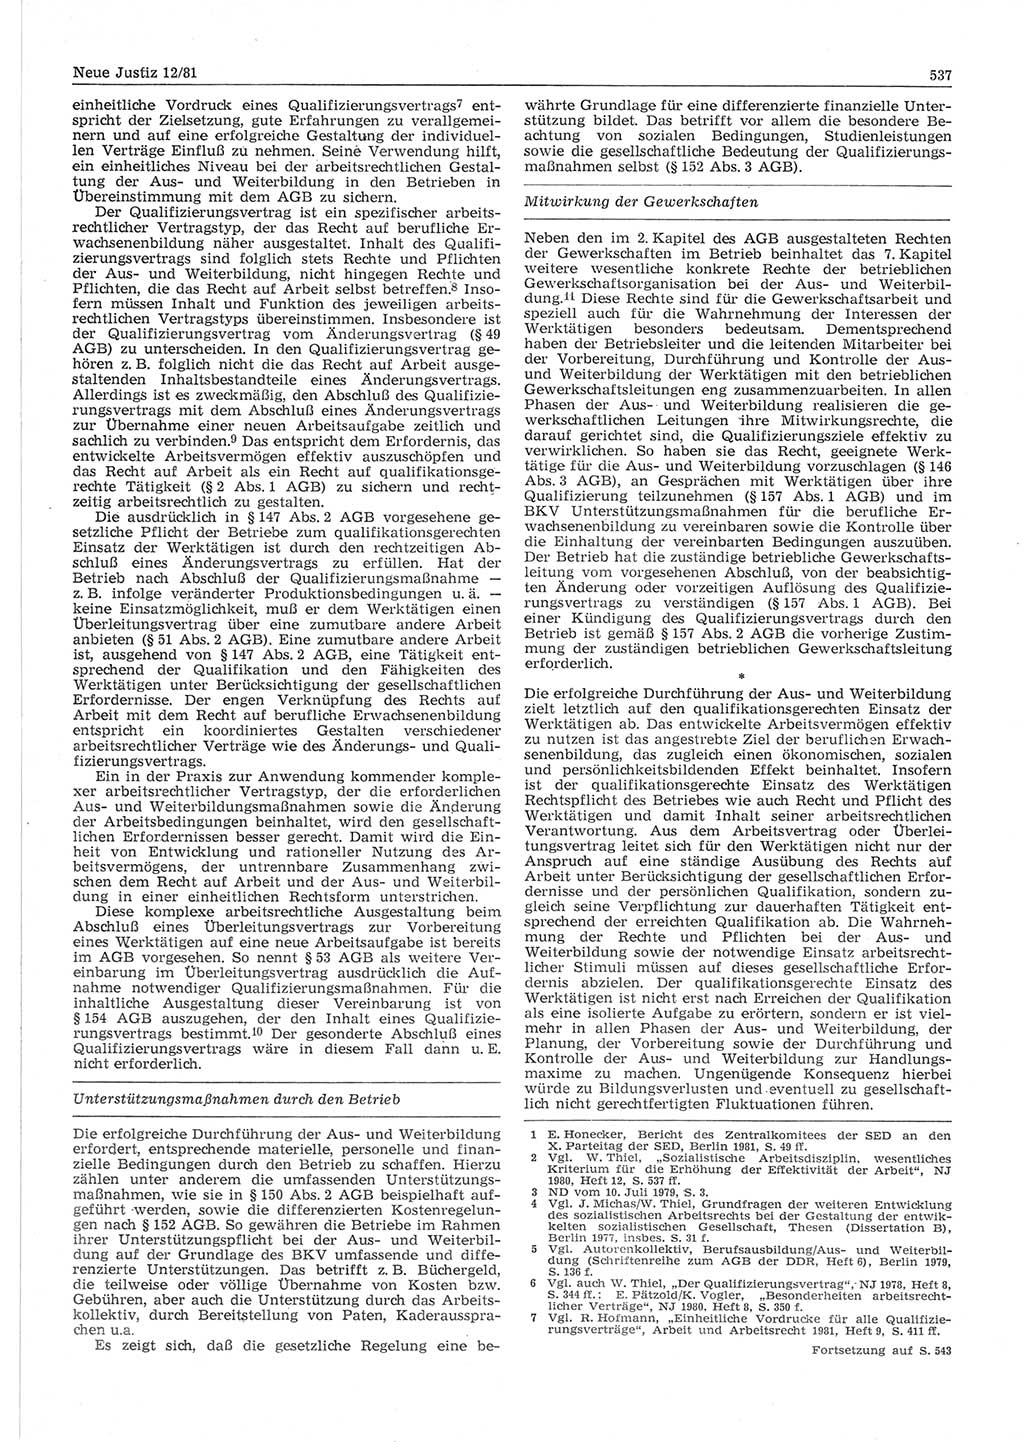 Neue Justiz (NJ), Zeitschrift für sozialistisches Recht und Gesetzlichkeit [Deutsche Demokratische Republik (DDR)], 35. Jahrgang 1981, Seite 537 (NJ DDR 1981, S. 537)